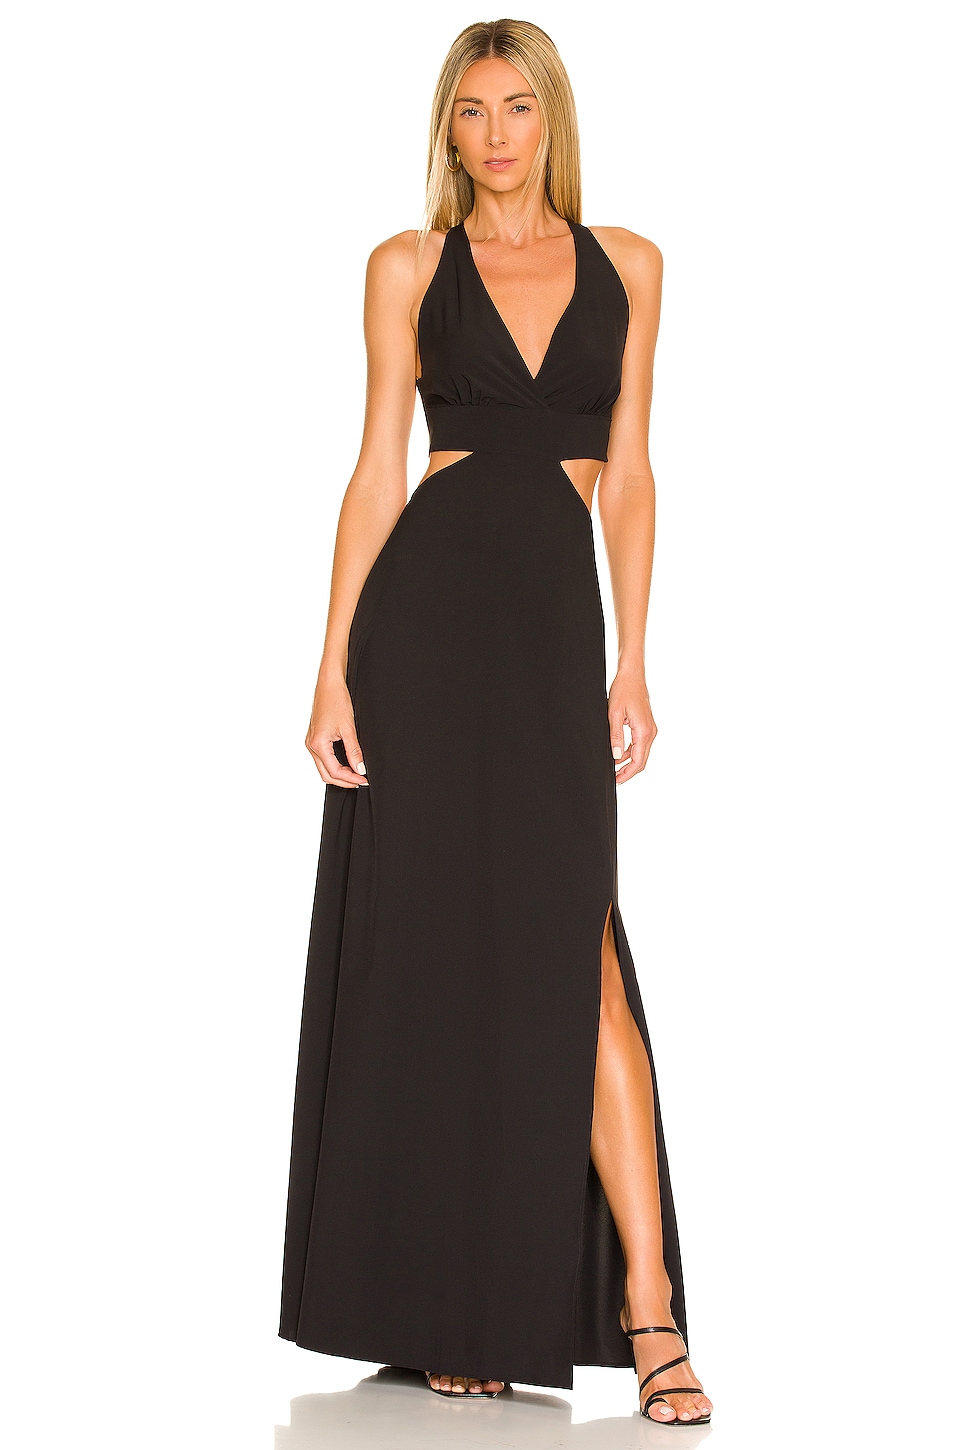 BOAMAR Nilda Dress in Black | REVOLVE